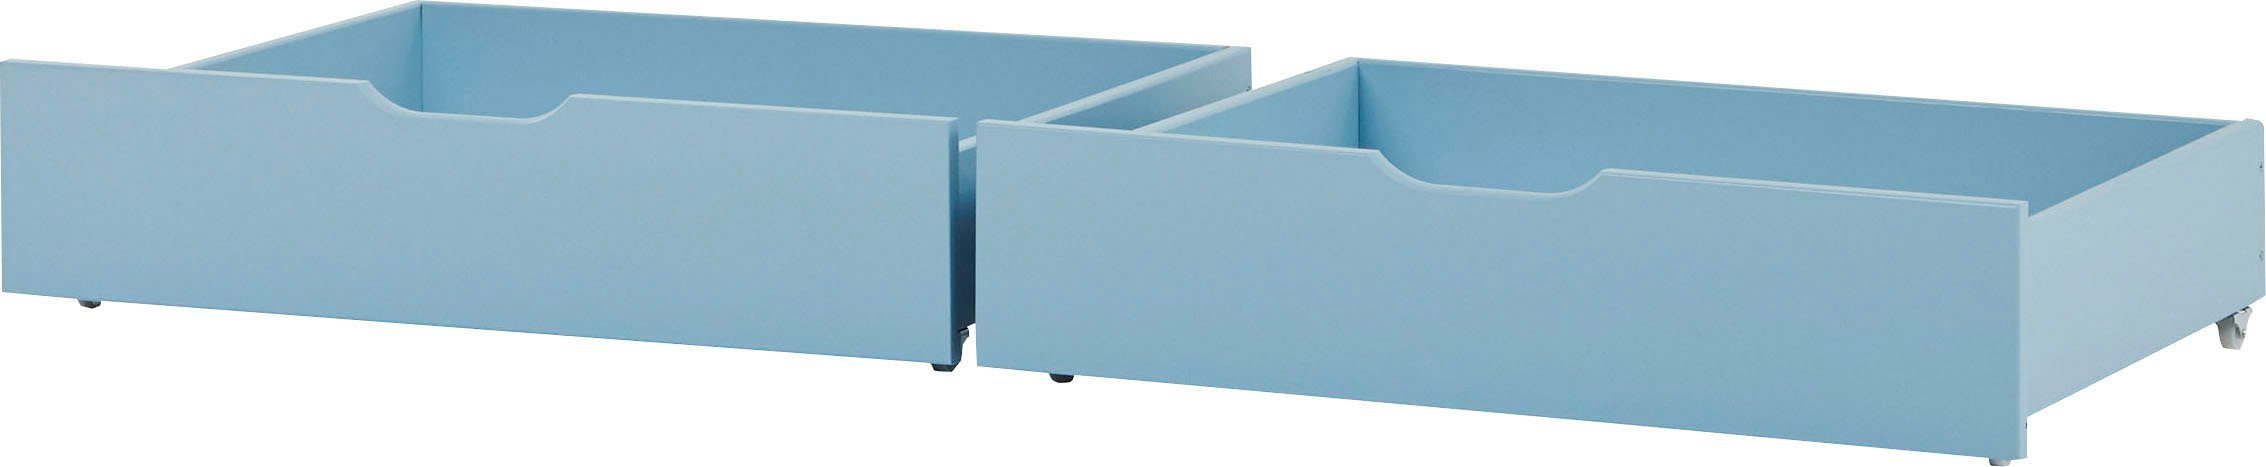 Hoppekids Bettschubkasten ECO Comfort (2 St), auf Rollen in 7 Farben erhältlich 2 St. blau | Schubkästen